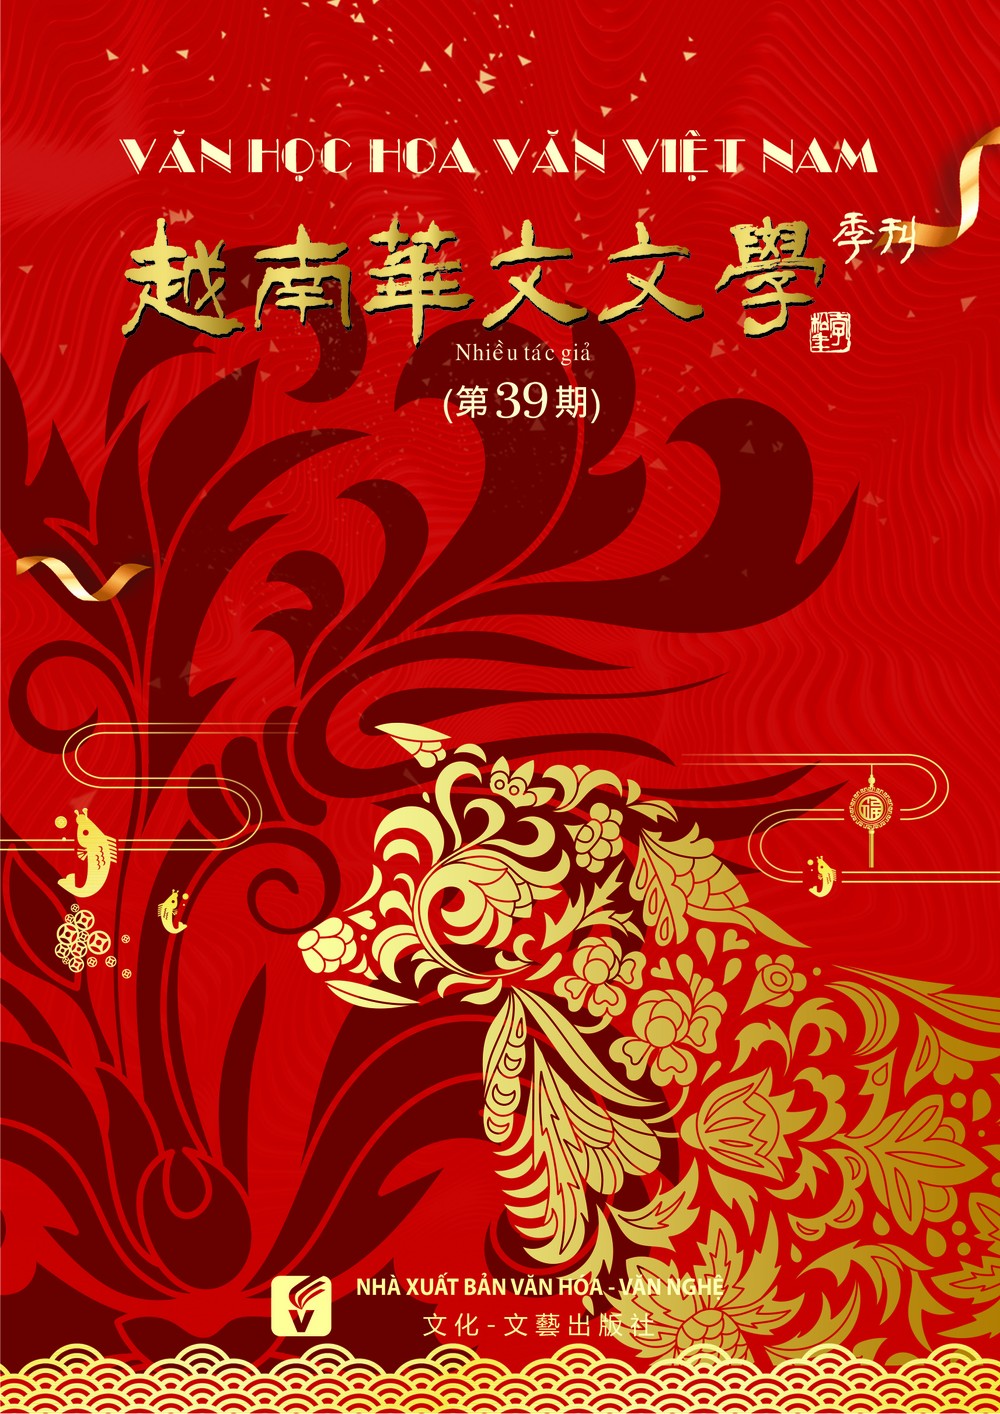 《越南華文文學》第 39 期發行。